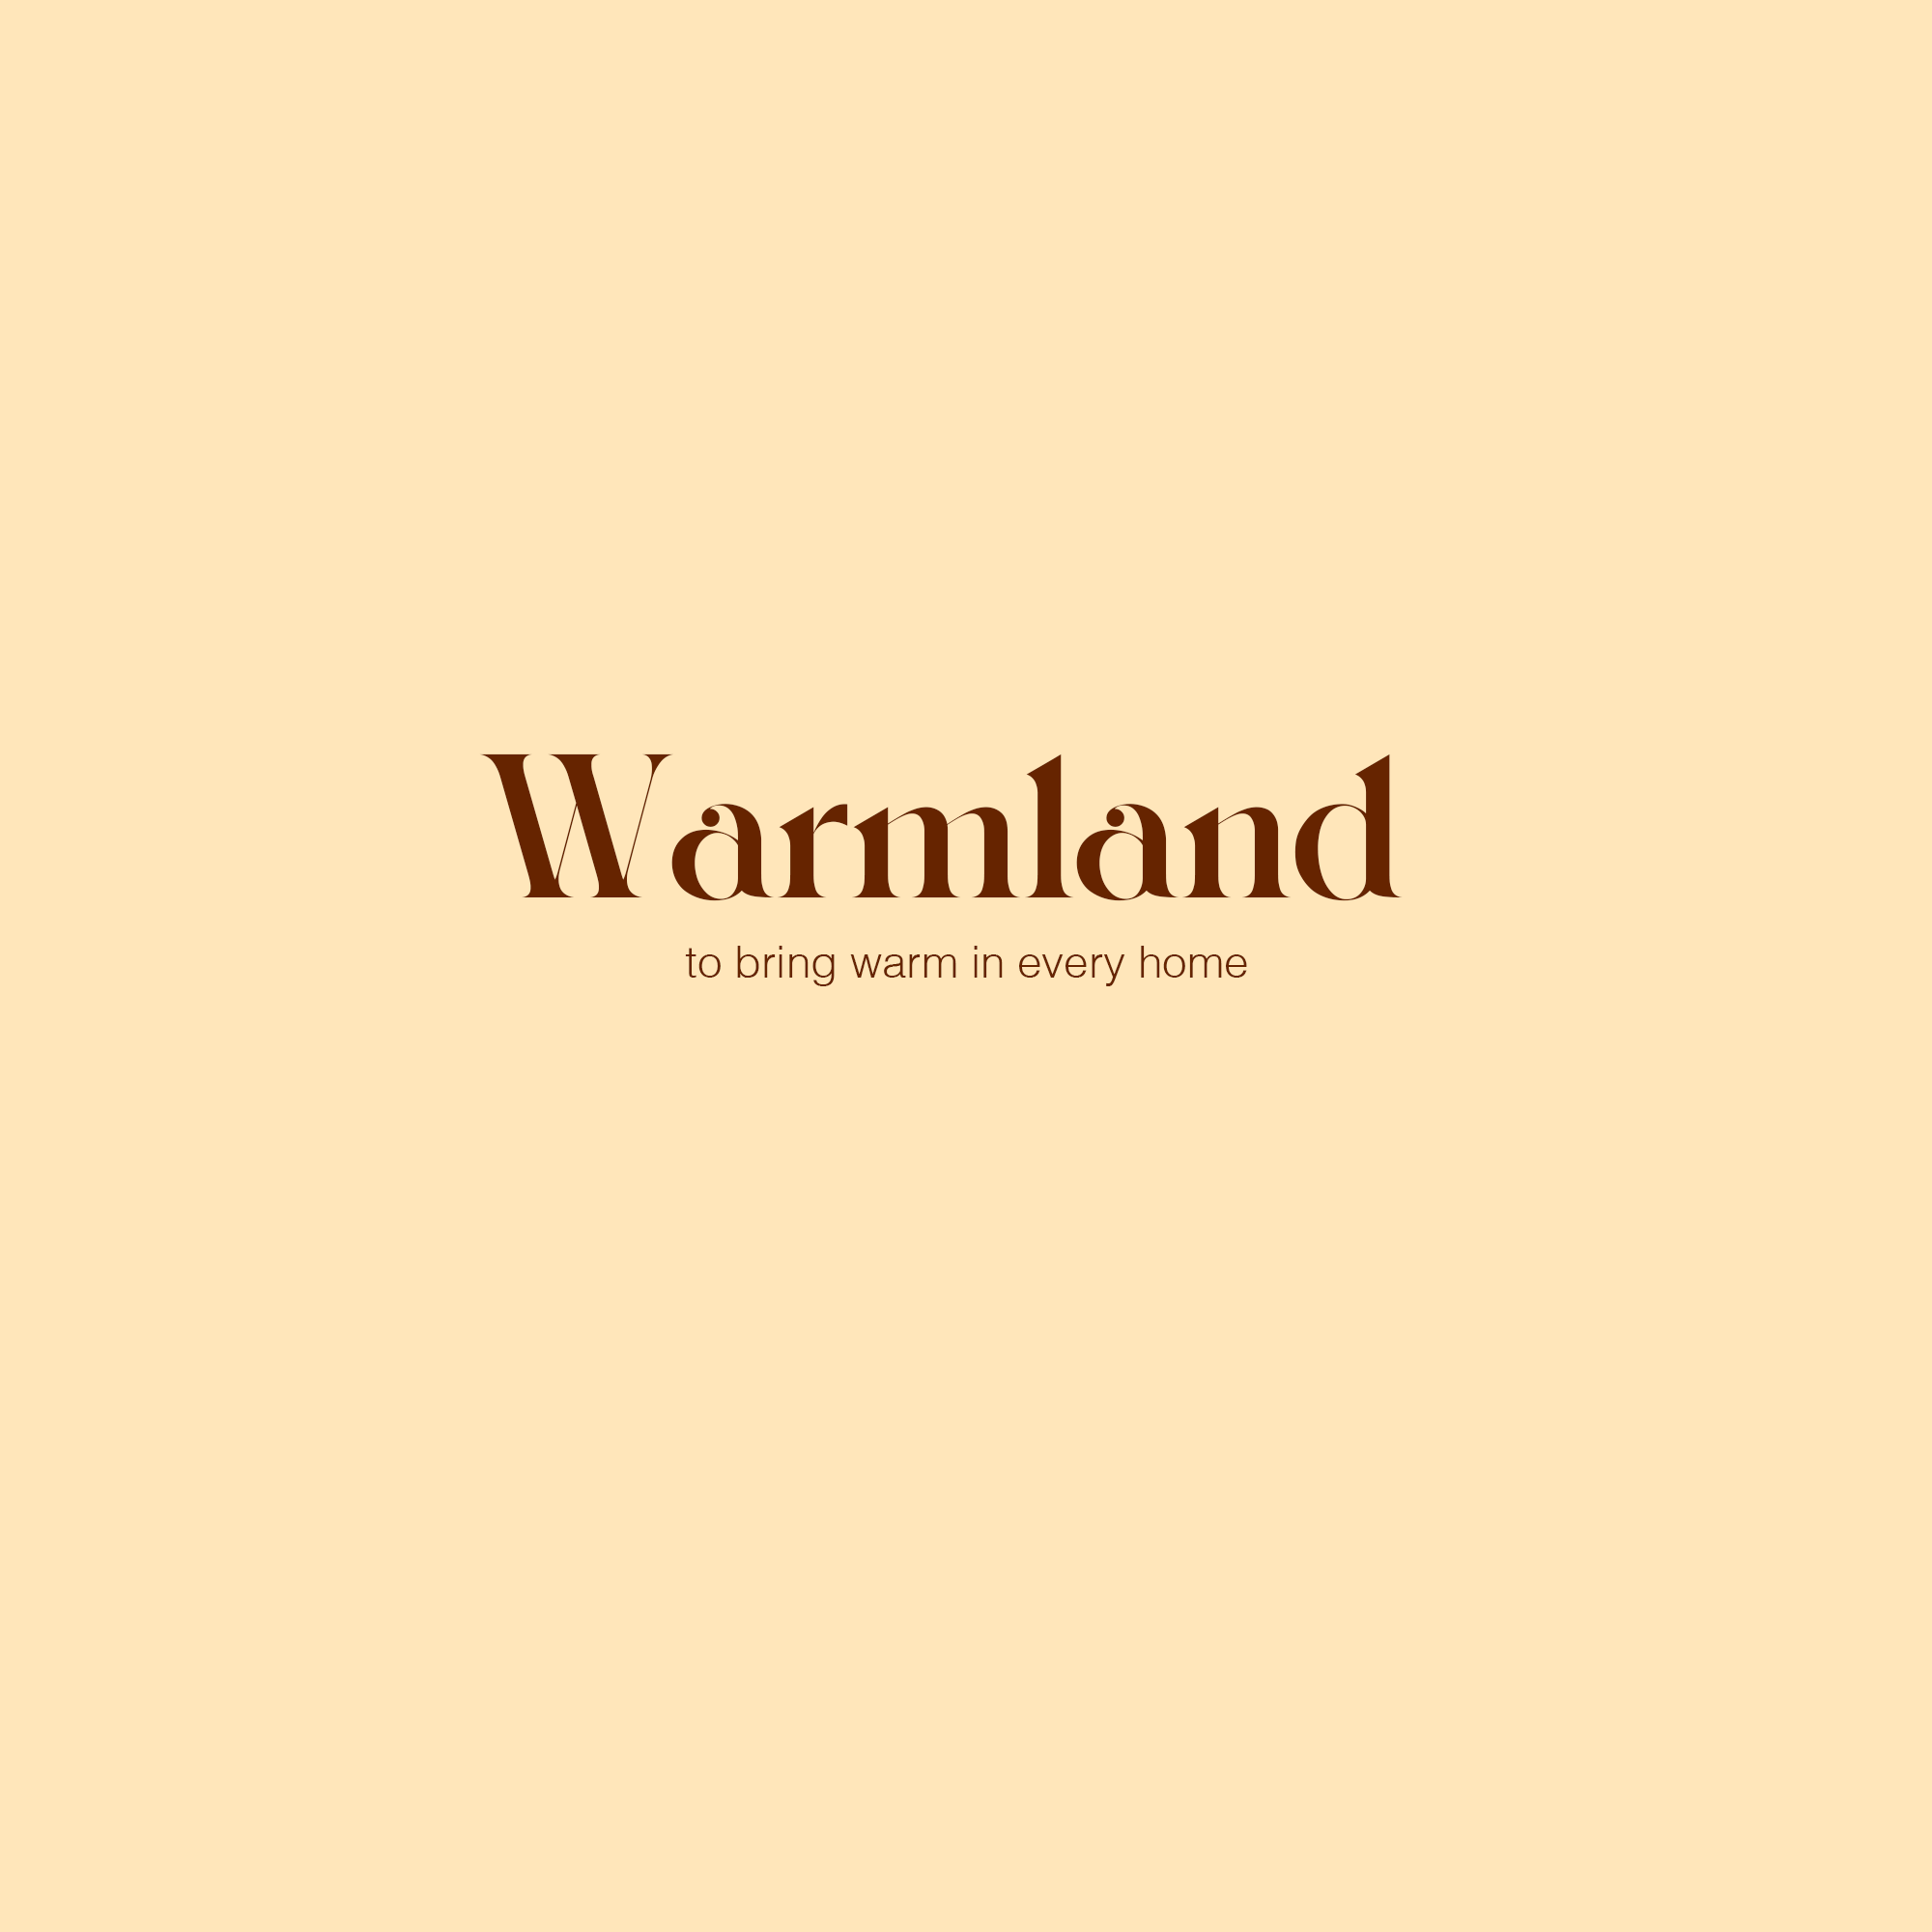 Warmland